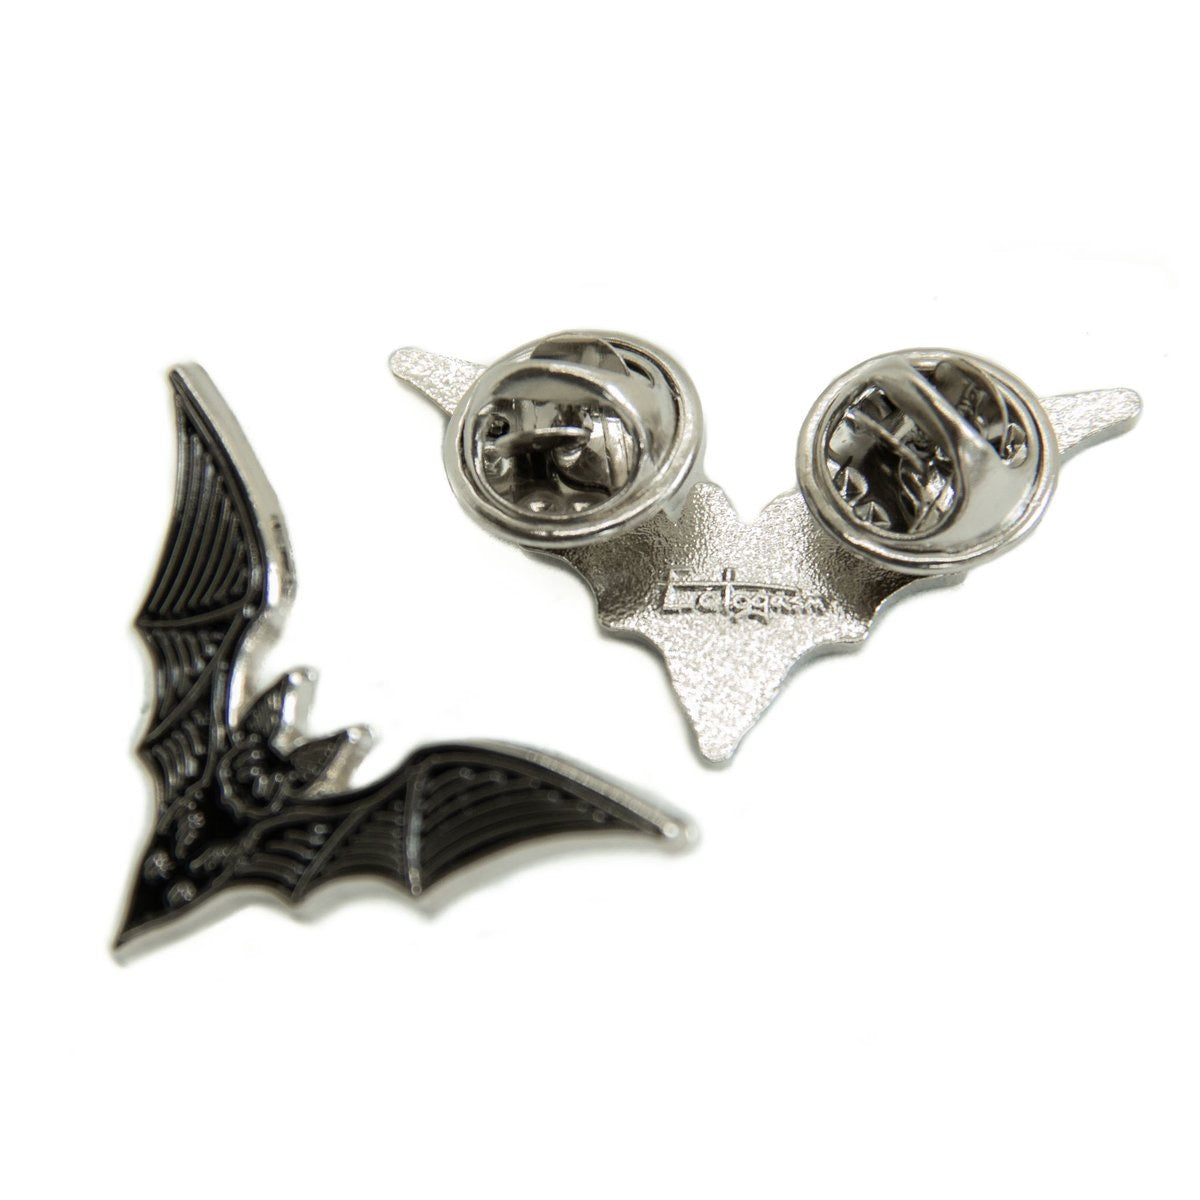 Ectogasm Bat Collar Pin Set